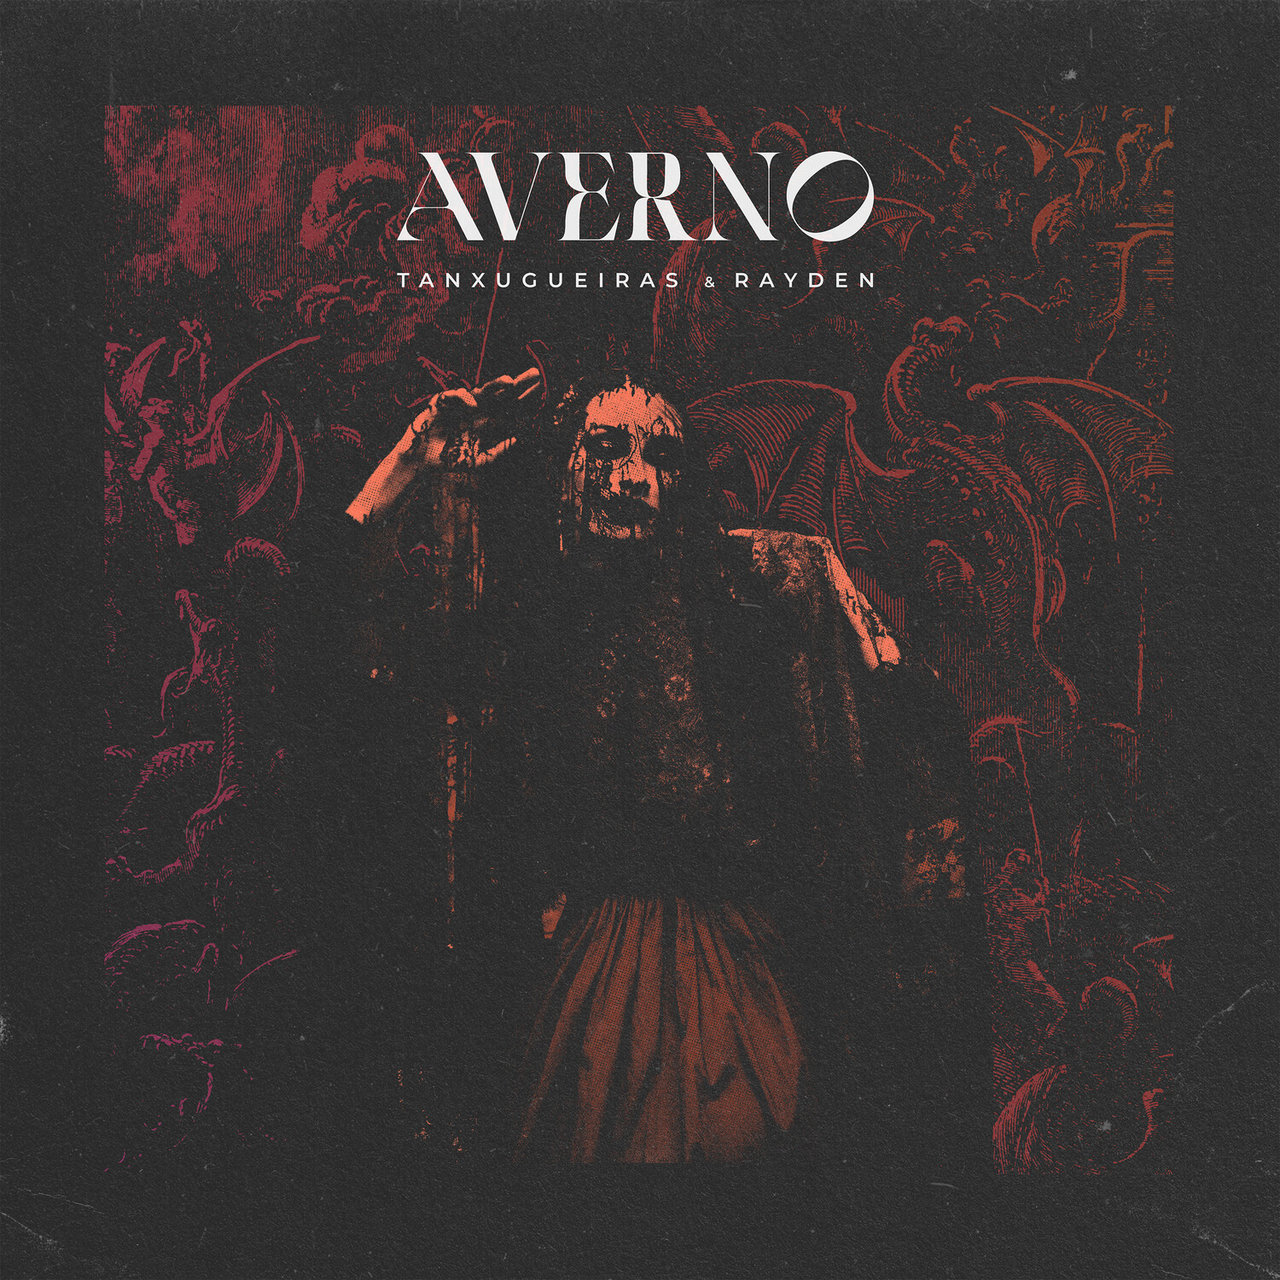 Tanxugueiras & Rayden — Averno cover artwork